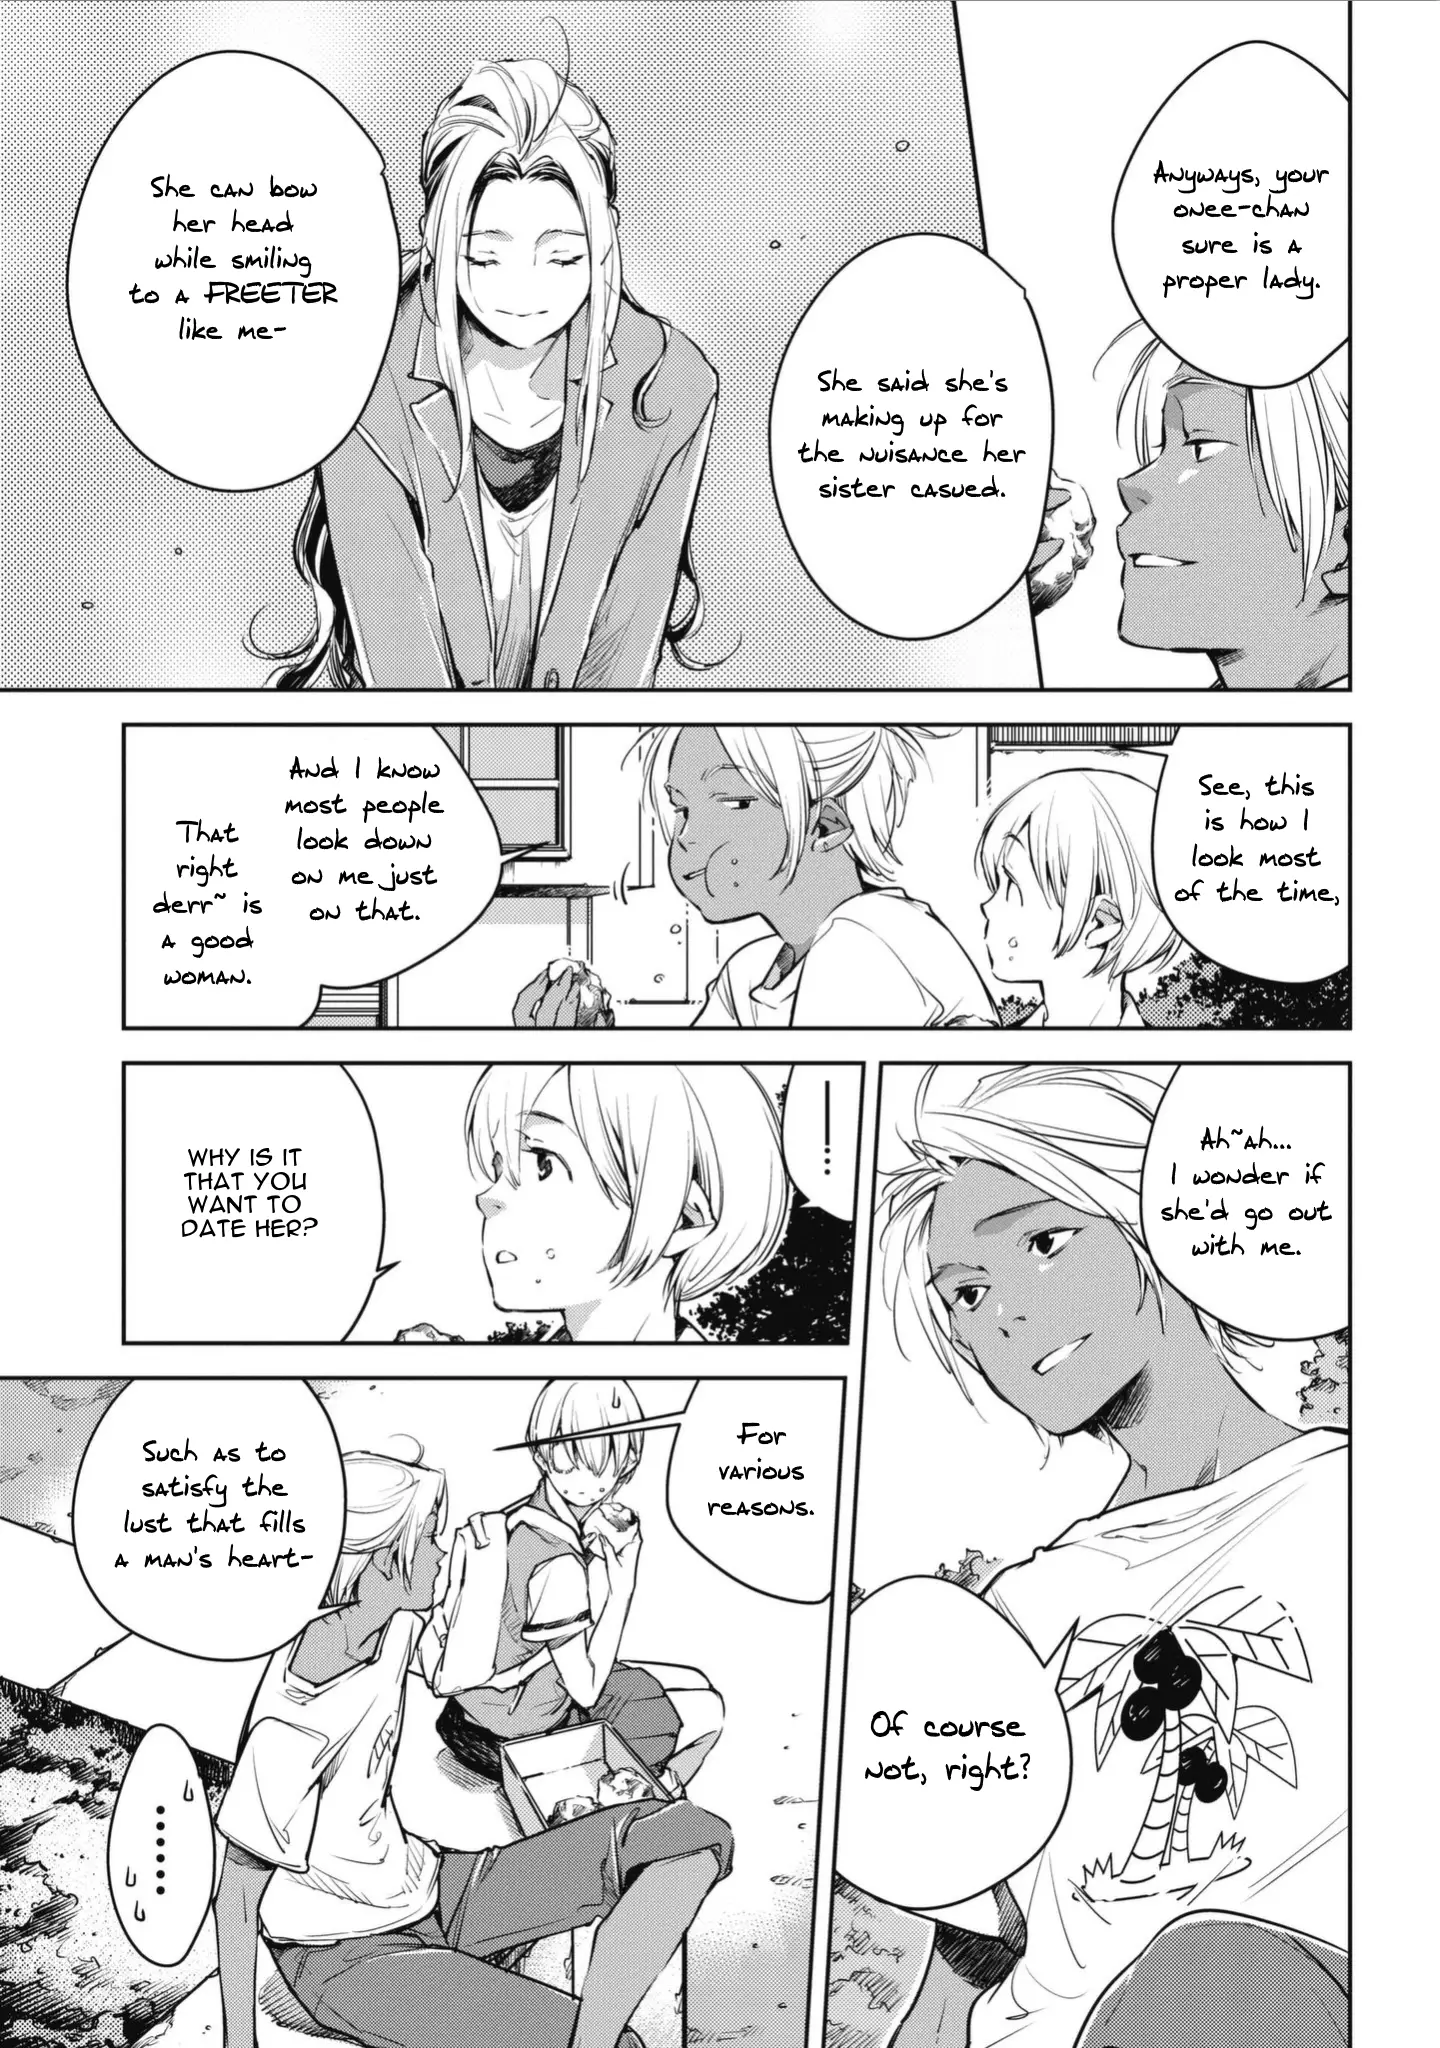 Okashiratsuki - 2 page 15